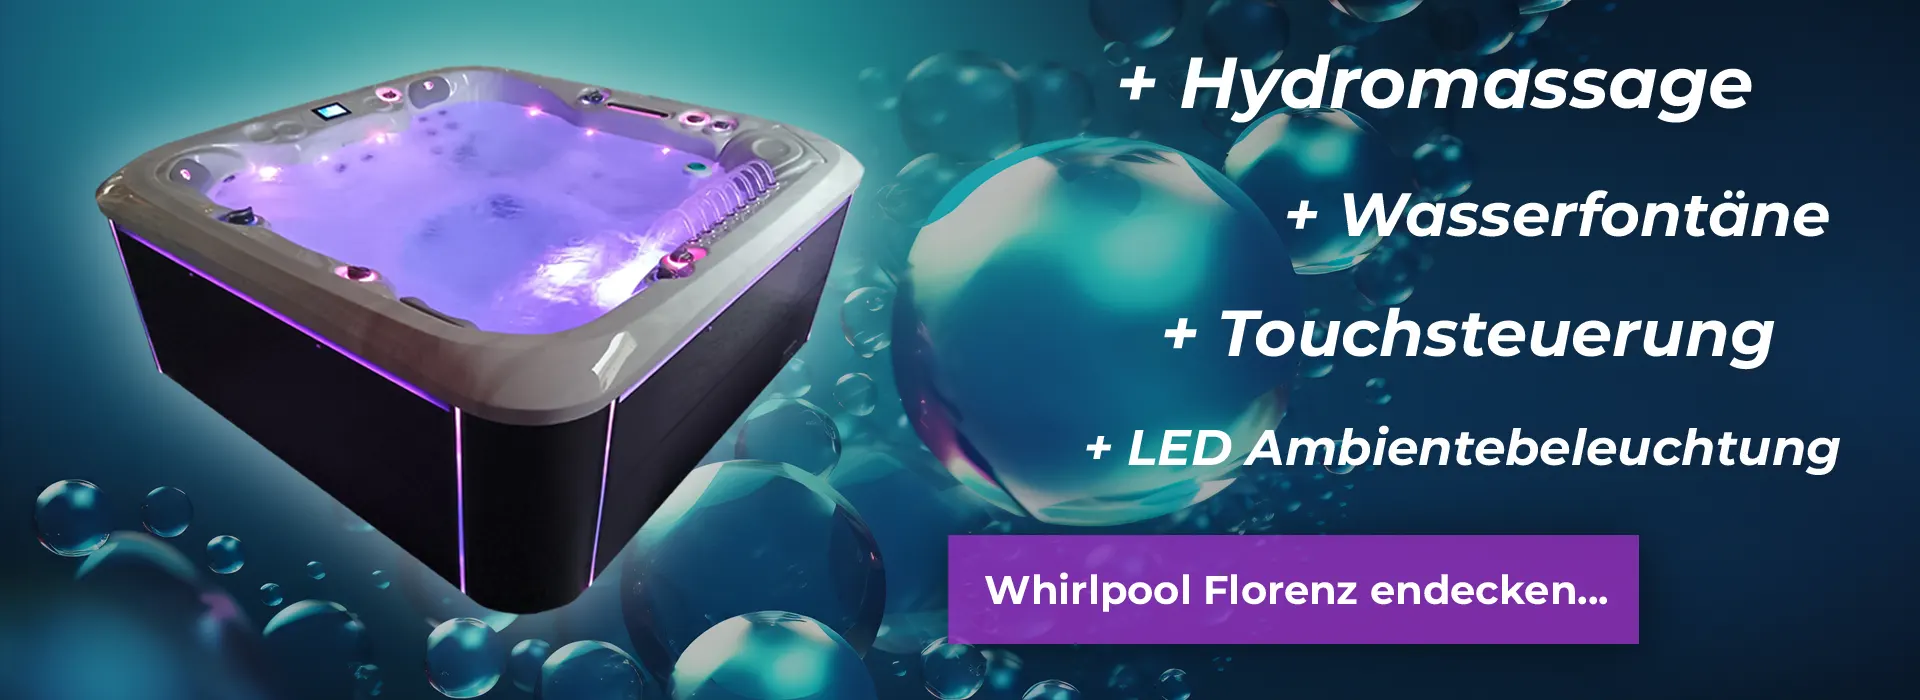 Whirlpool Florenz mit LED Beleuchtung und Hydromassage